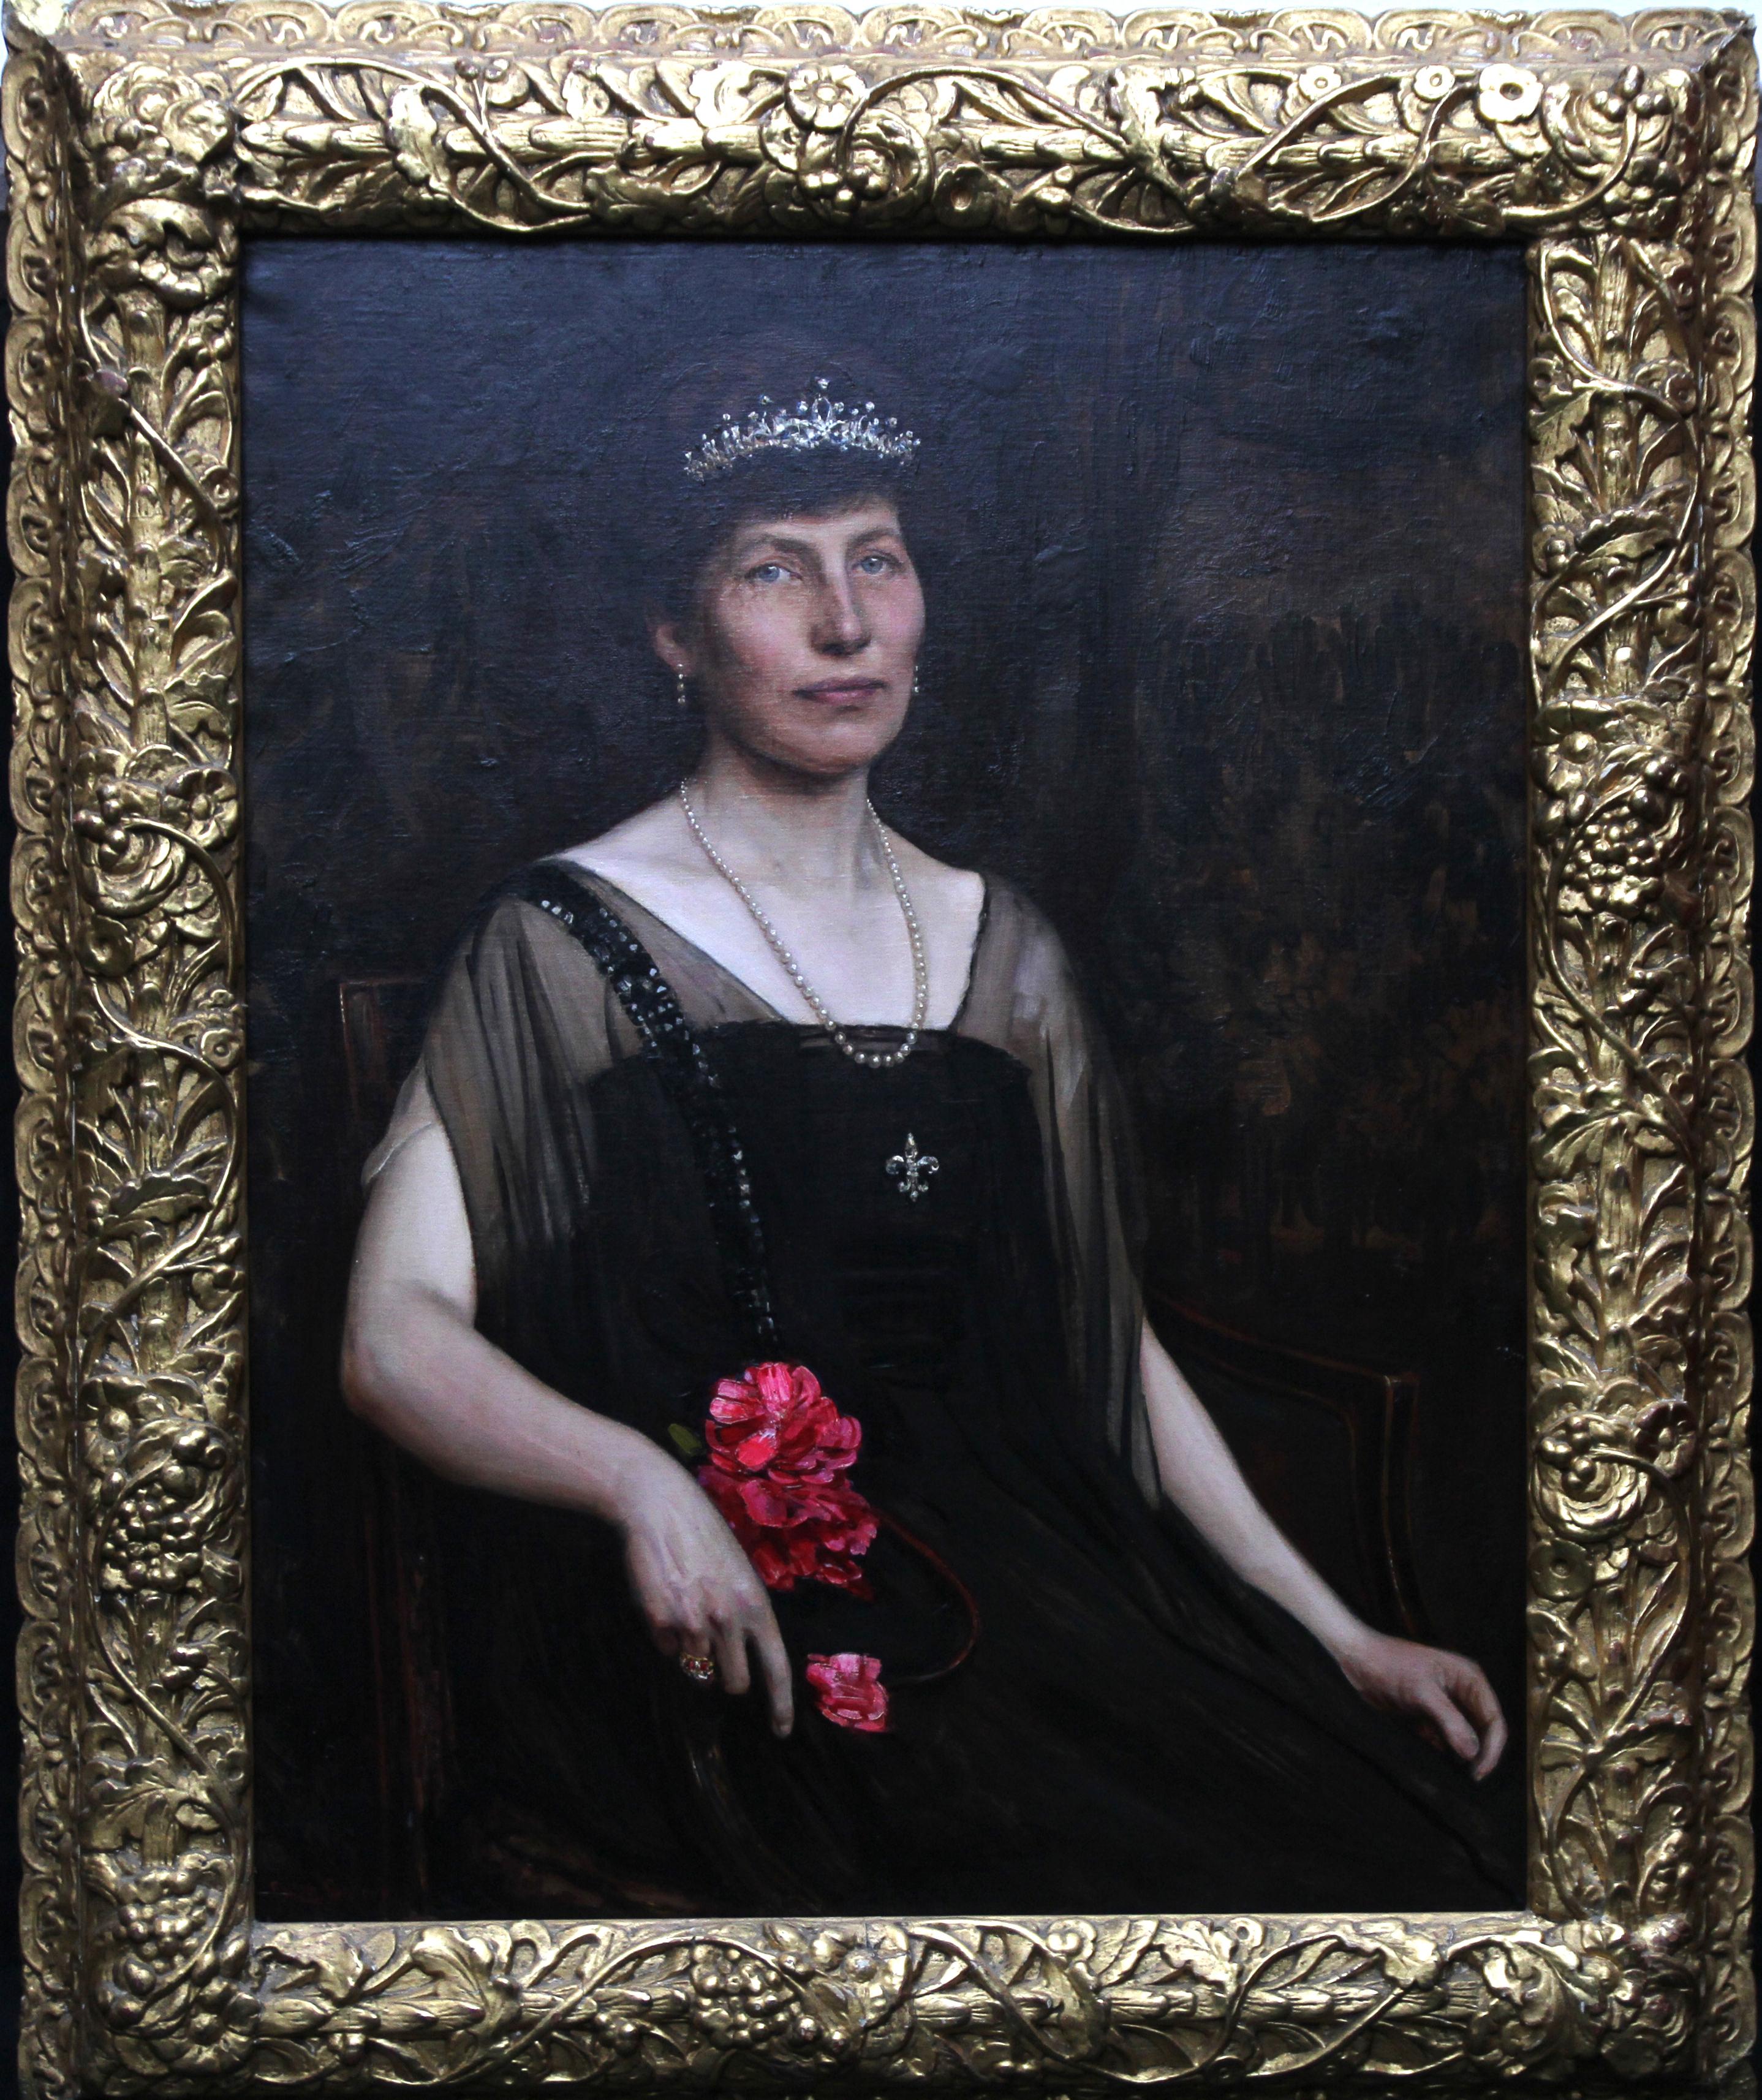  Portrait of an Edwardian Lady - British 1900 art female portrait oil painting For Sale 2